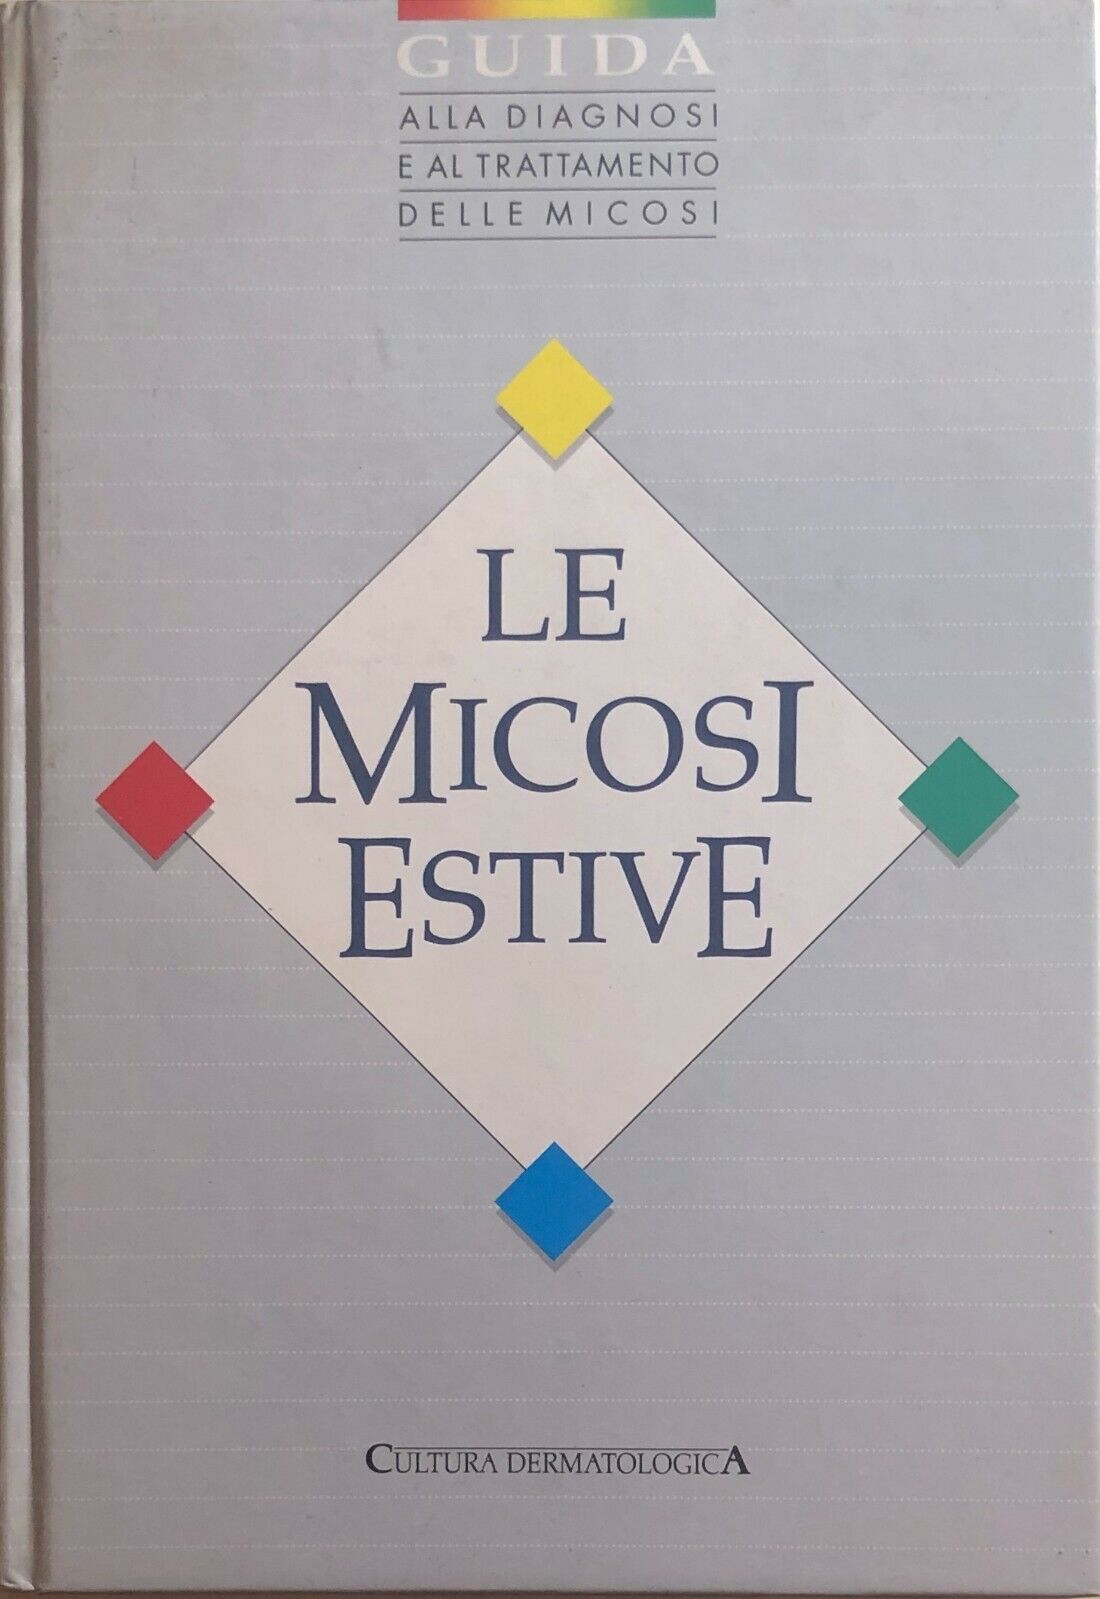 Le micosi attive di Aa.vv., 1988, L'Ariete Edizioni